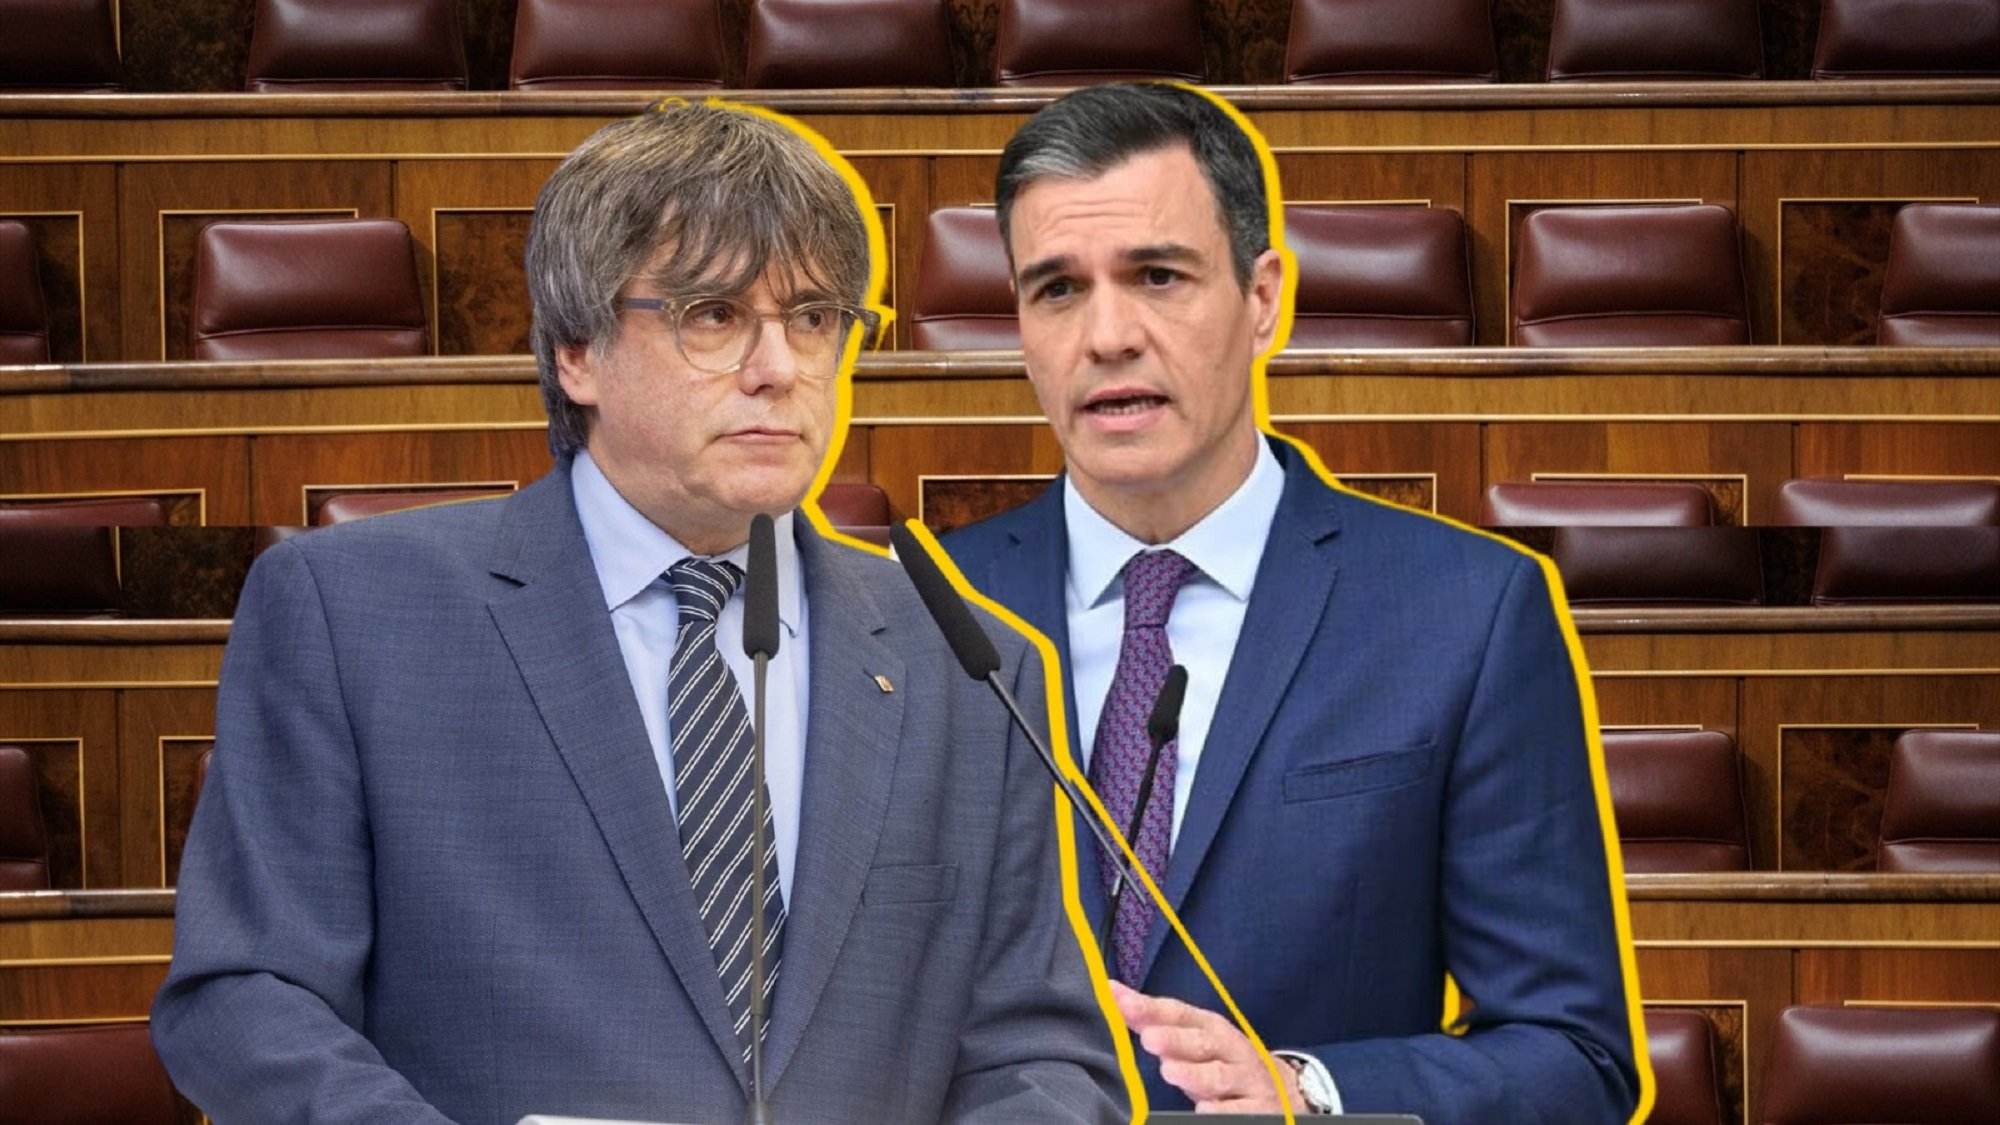 ¿Crees que habrá acuerdo Sánchez-Puigdemont?